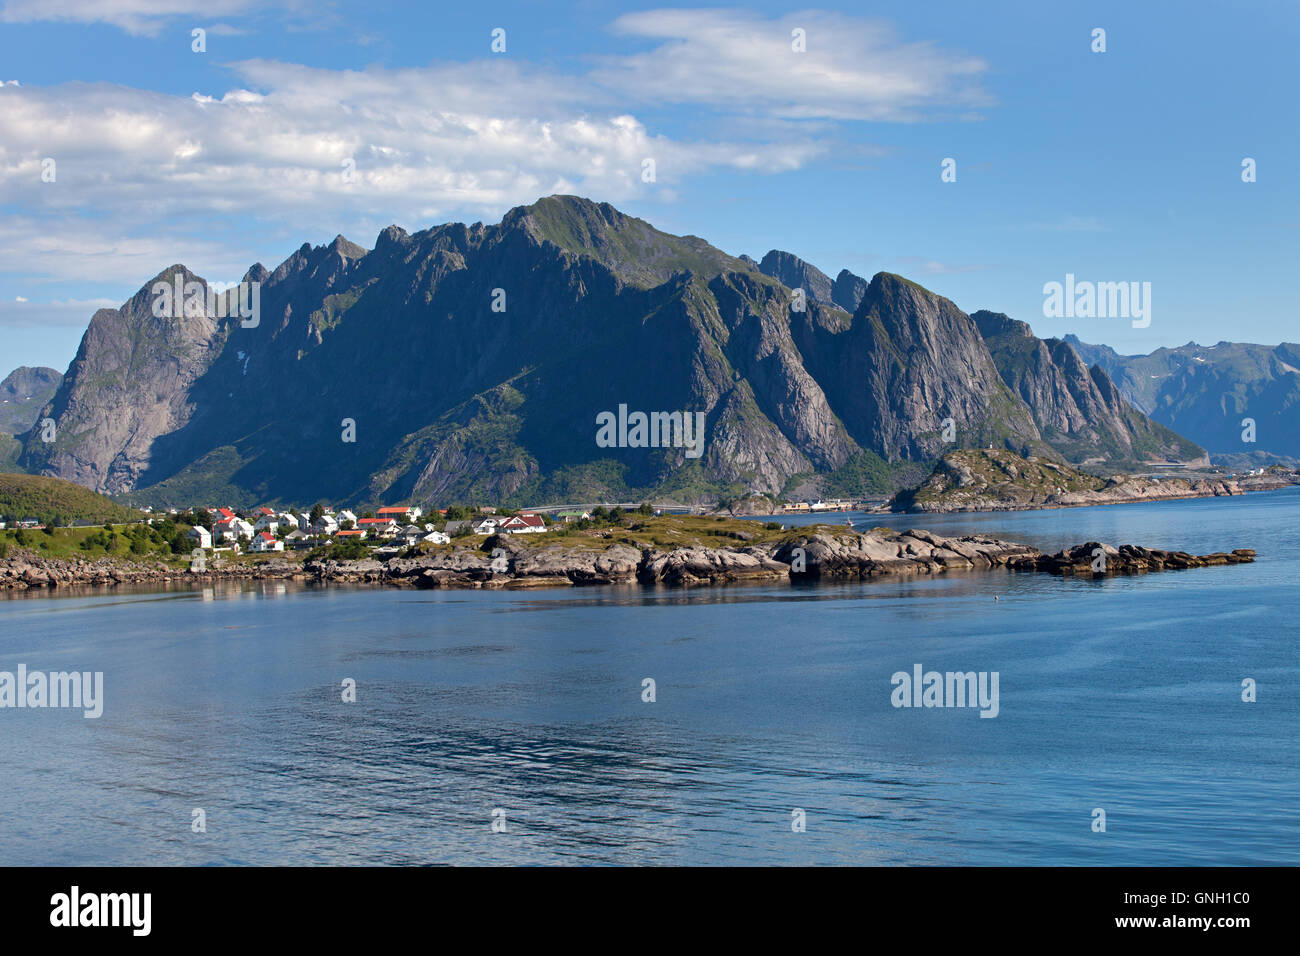 Sakrisøy: Seaview with Mountains Stock Photo